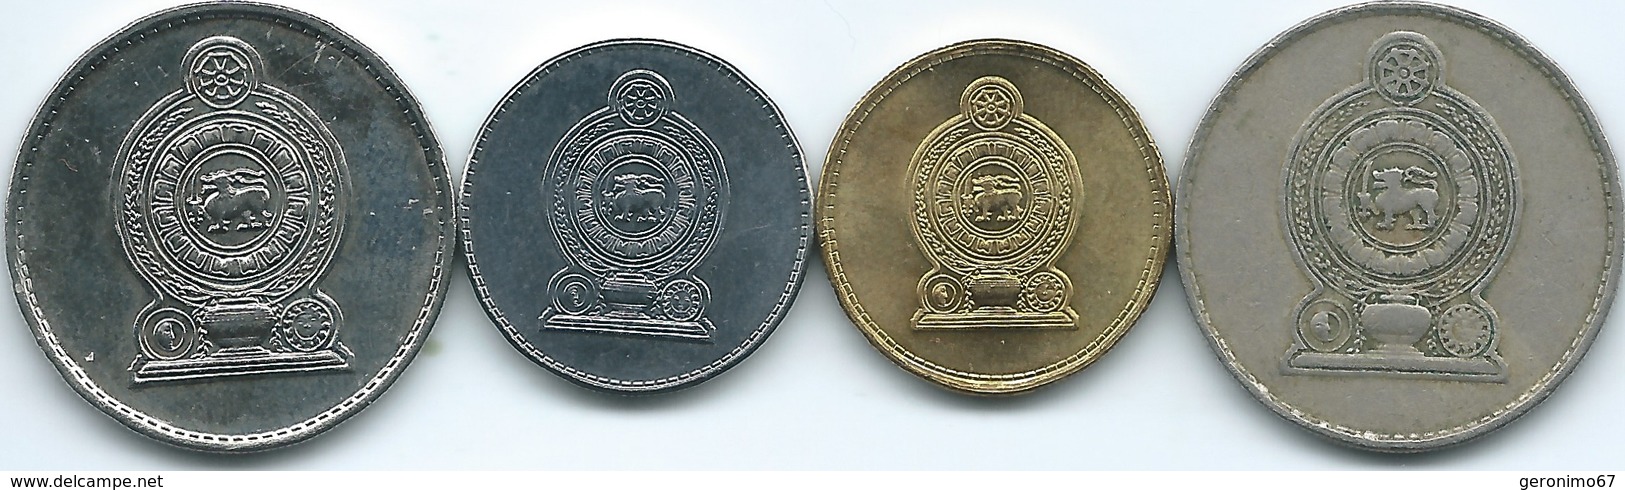 Sri Lanka - 1 Rupee - 1982 (KM136.2) 2000 (KM164) 2009 (KM136.3) & 2016 - Sri Lanka